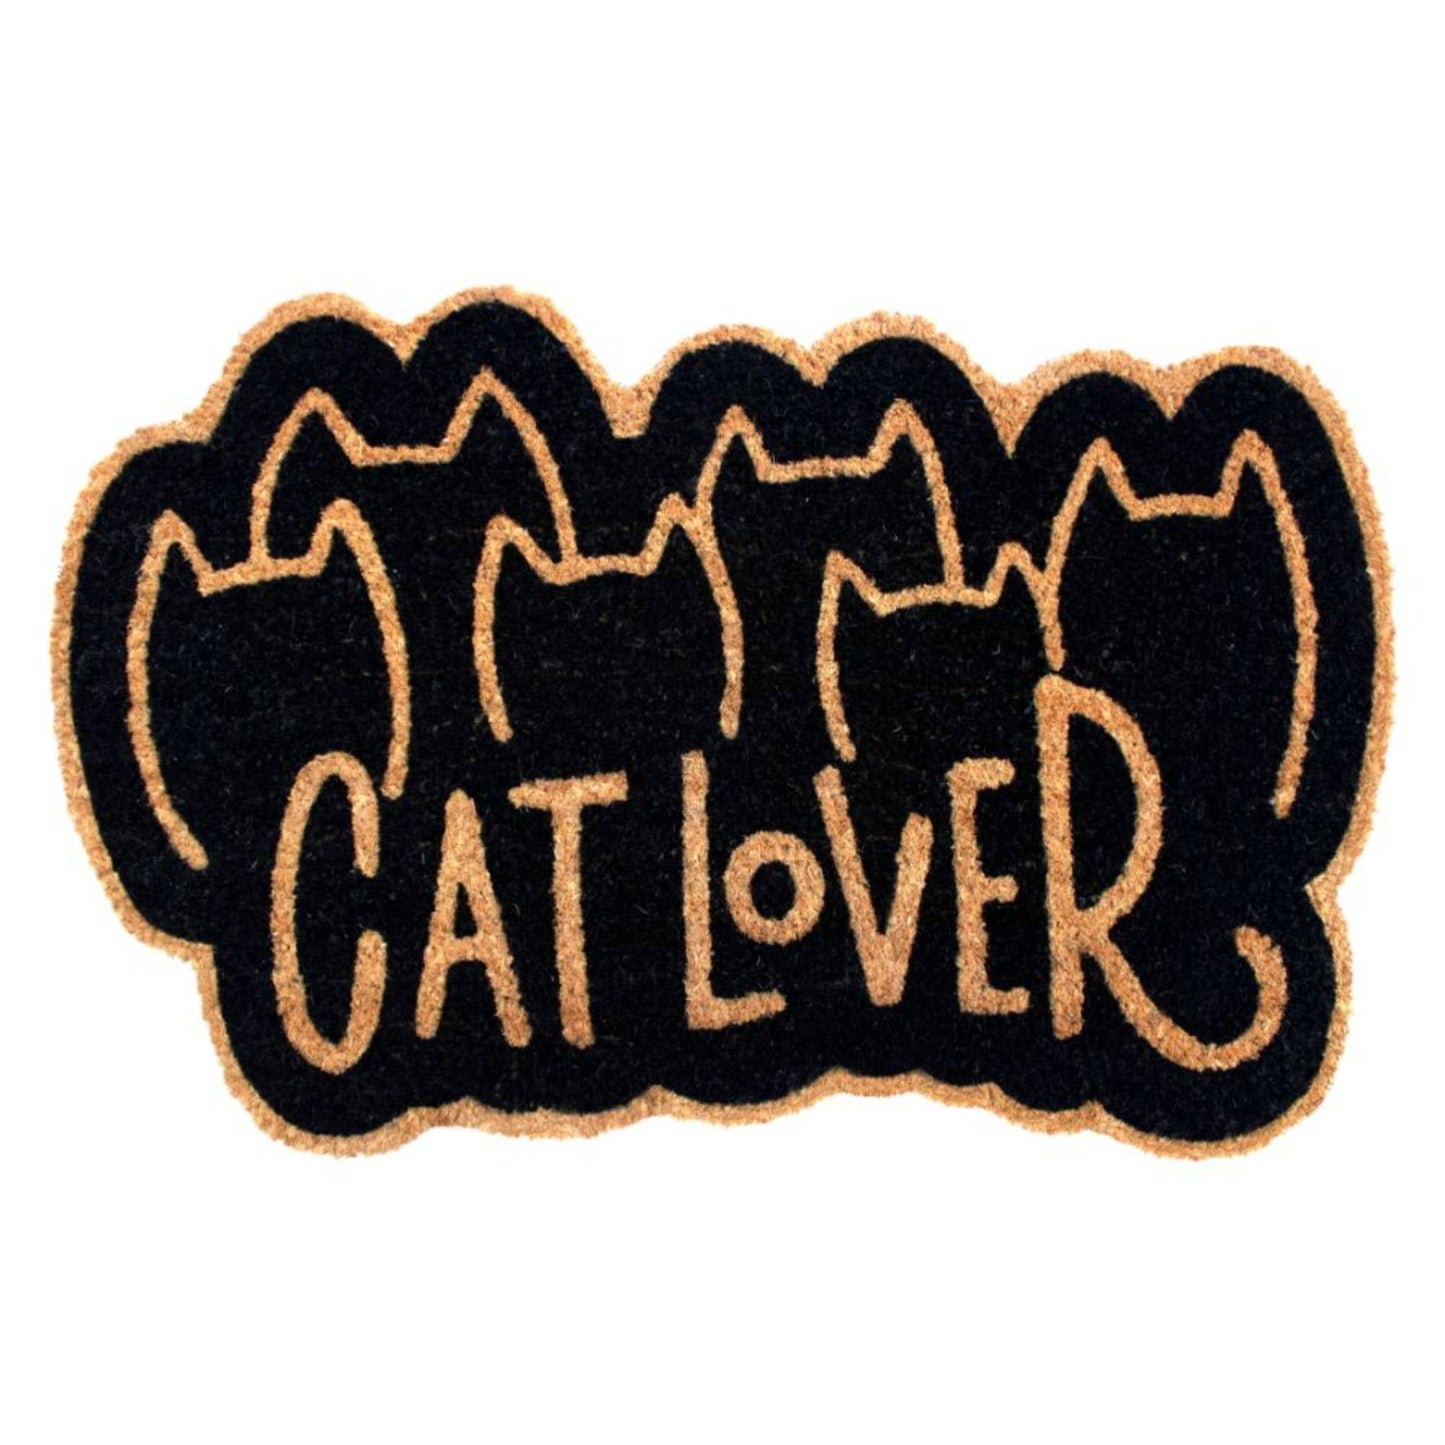 Black Cat Lover Coir Doormat, 16" x 24"